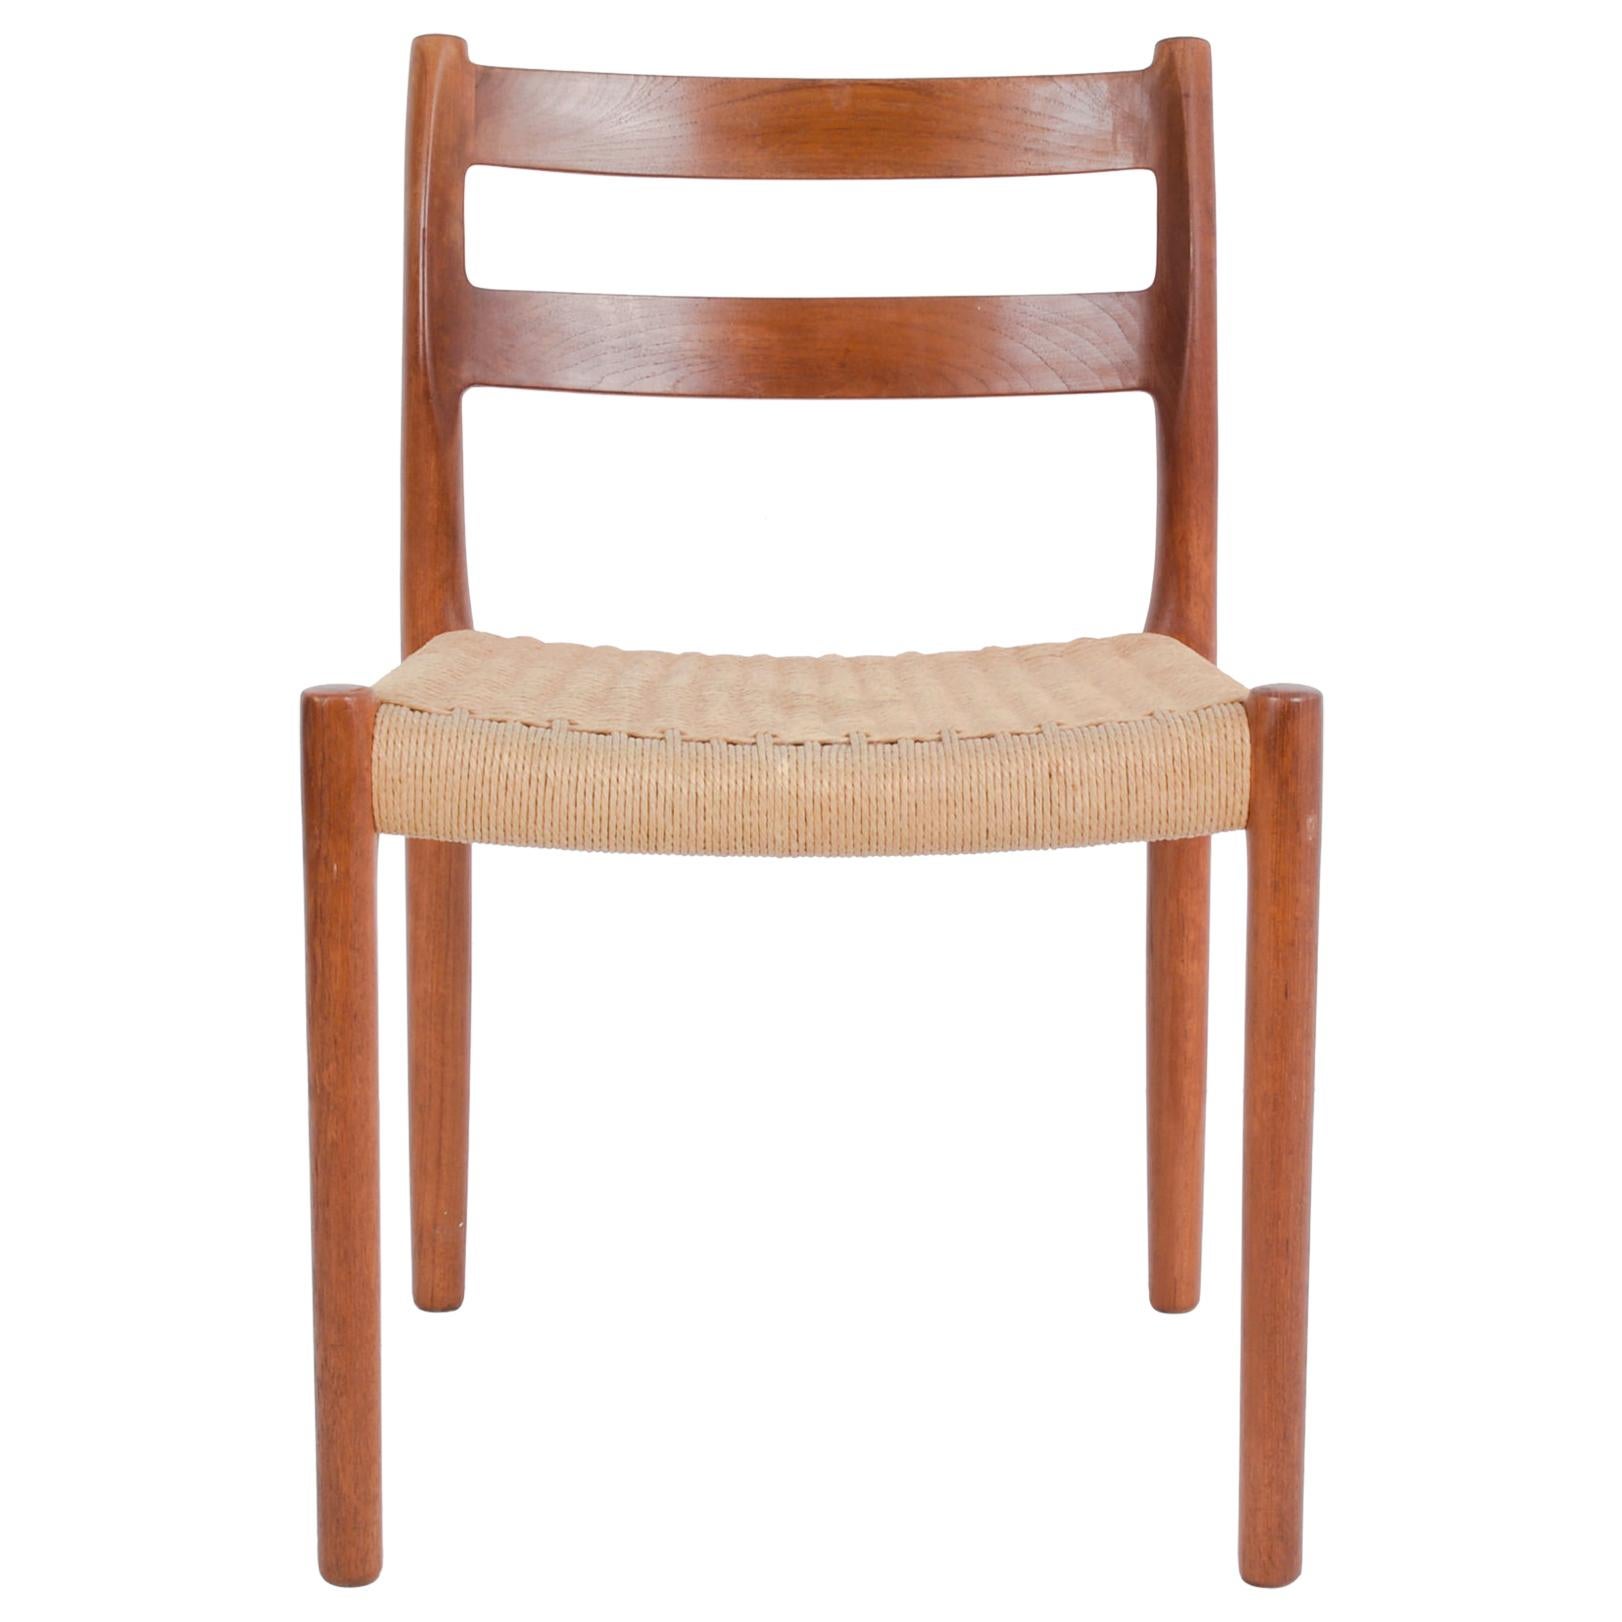 1960s Danish Arne Hovmand-Olsen Teak Chair